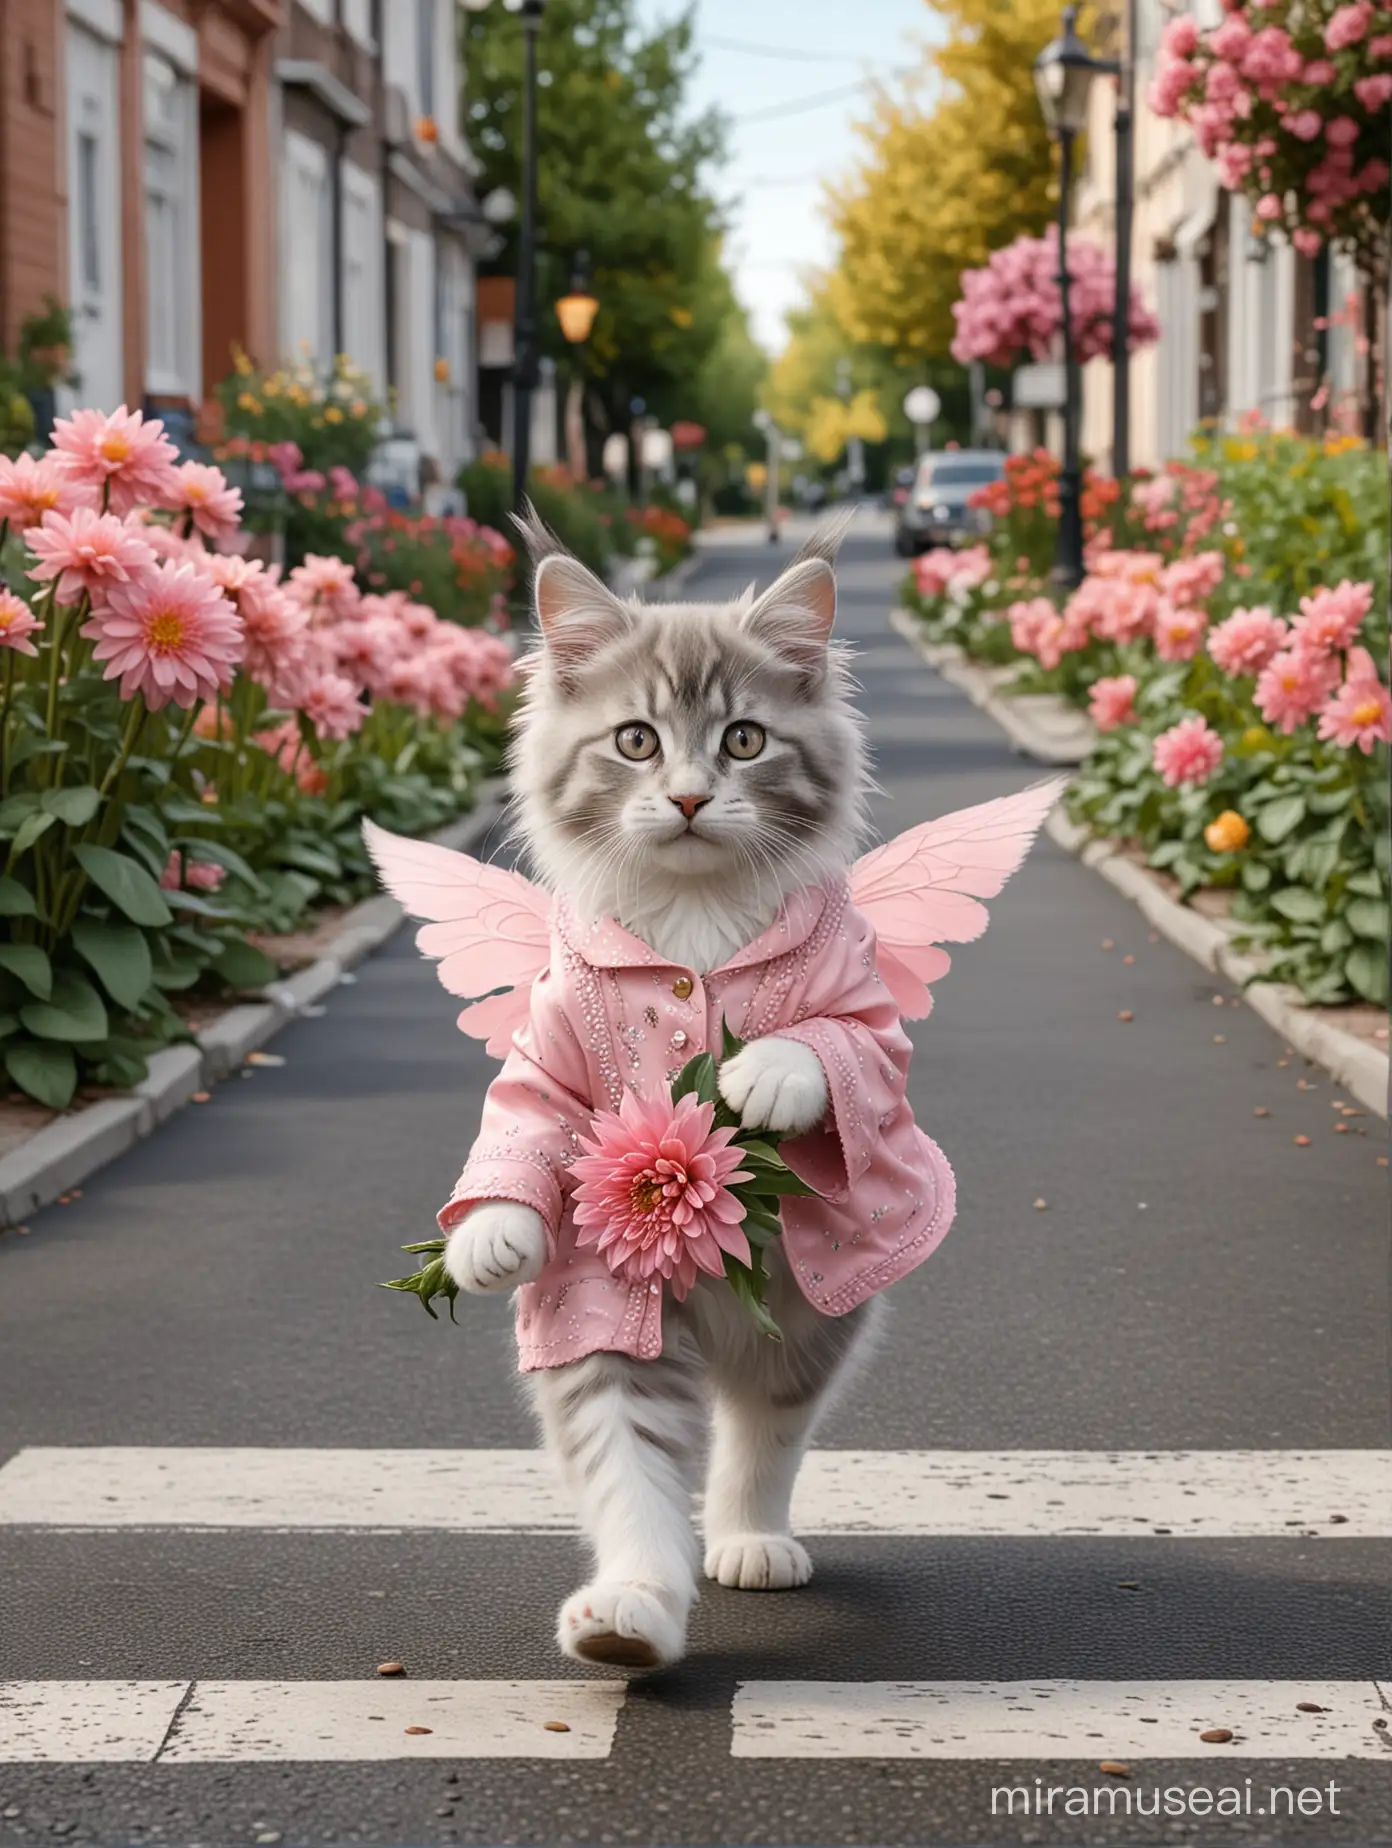 视图中,拟人化的可爱的灰白色缅因小猫咪的形象，精灵翅膀，马路上，走在班马线上，穿着香奈儿杏色套装，脚上穿着圆头玛丽简鞋，斜挂香奈儿小包，手拿一束粉色大丽花，花店，城市较远背景，照片逼真，超细节，超细节，4k, 8k——ar 3:4——v 6.0

